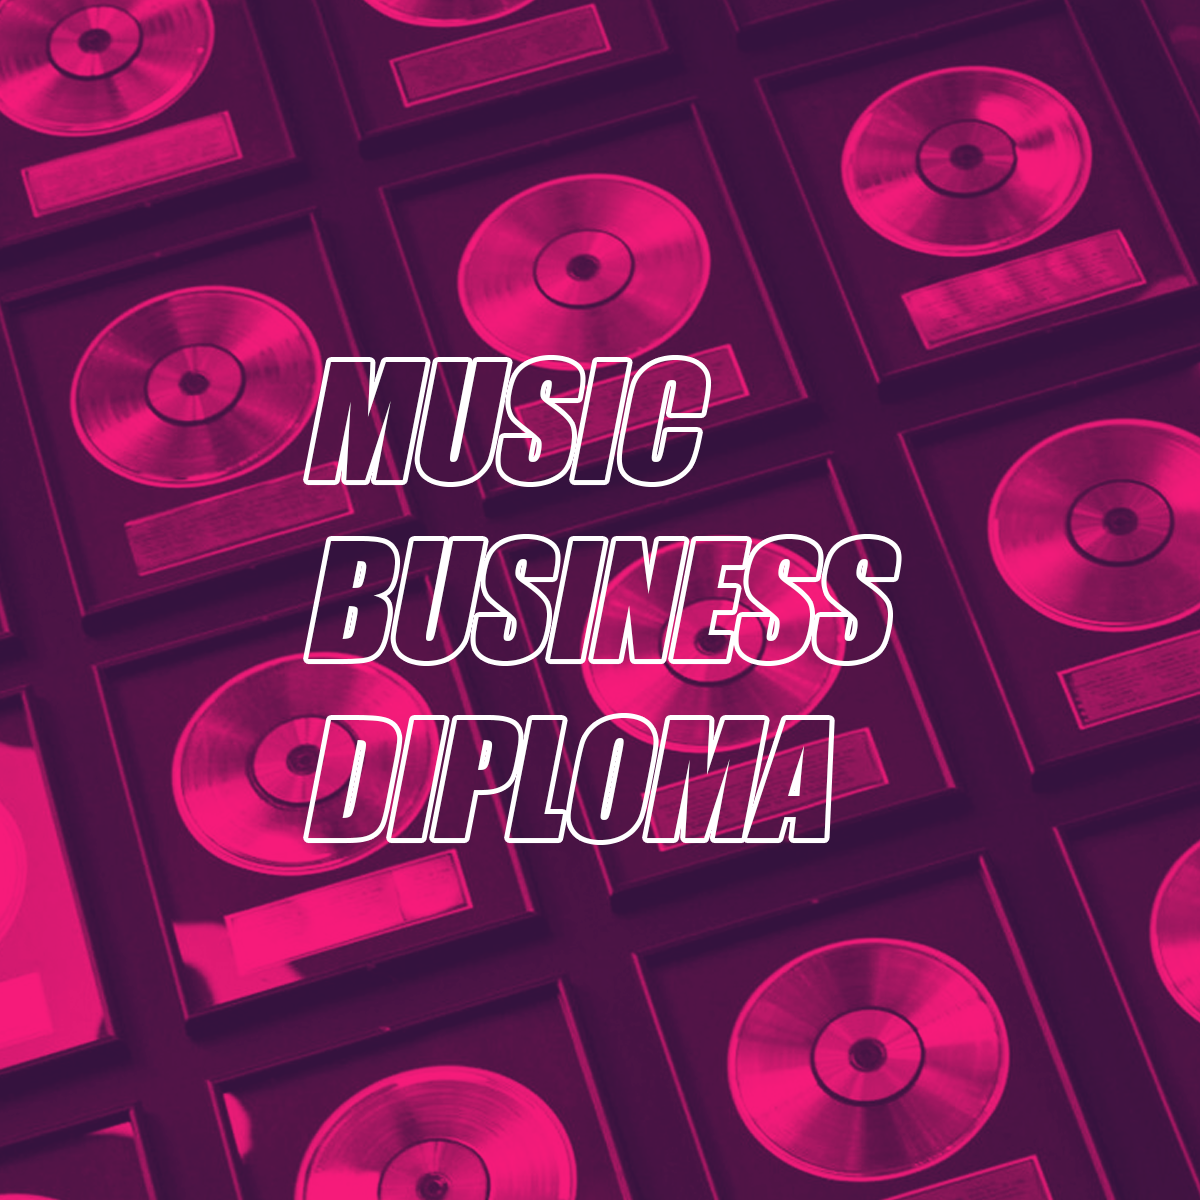 Curso de Music Business